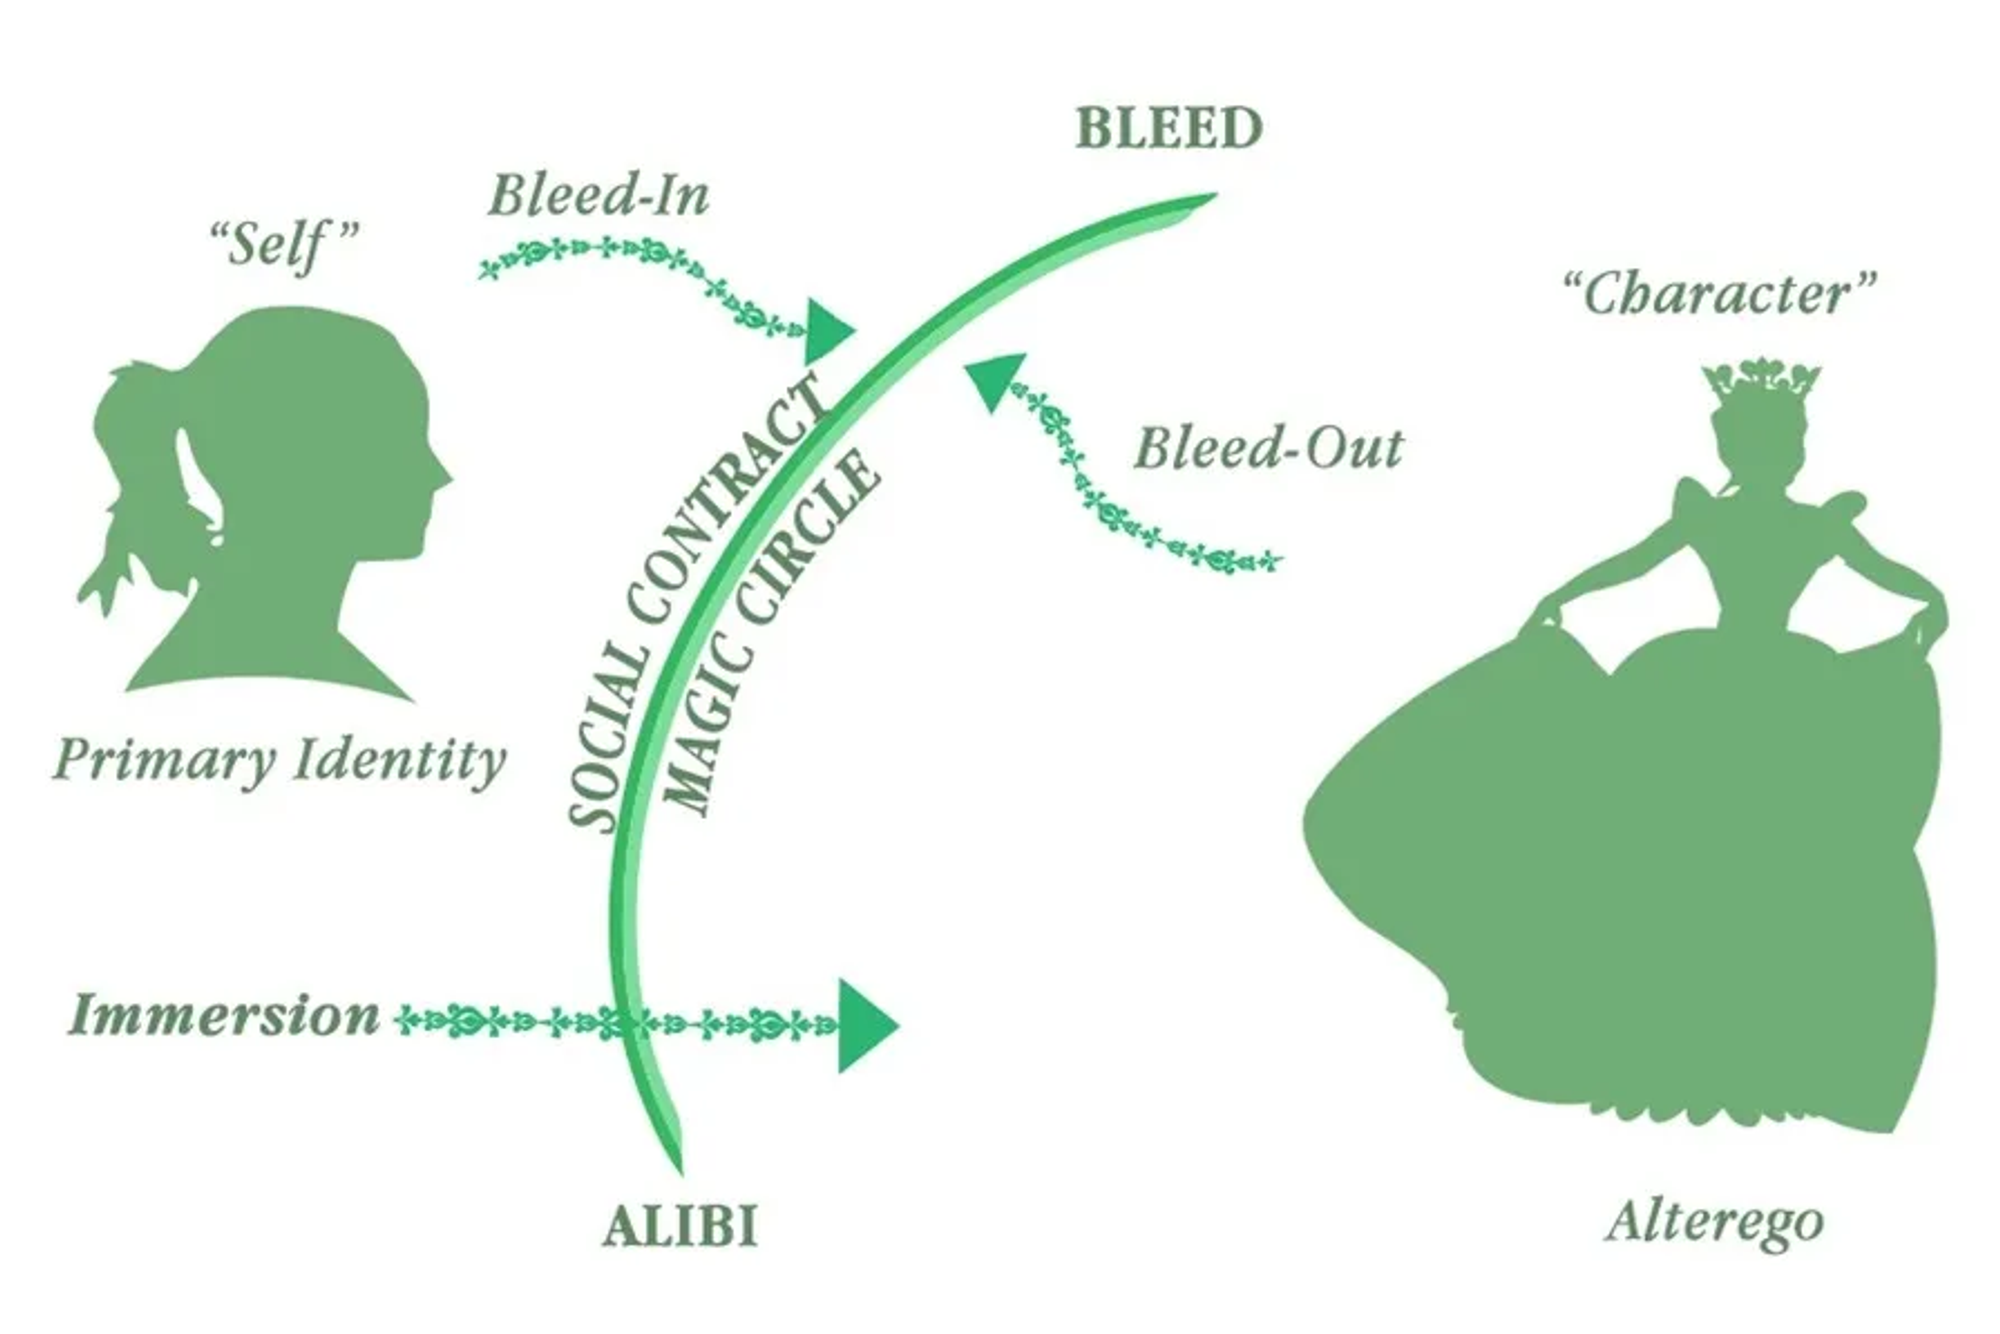 角色扮演研究術語圖，包括出血和不在場證明之間的關係。圖片由 Mat Auryn 提供。由莎拉·鮑曼設計。